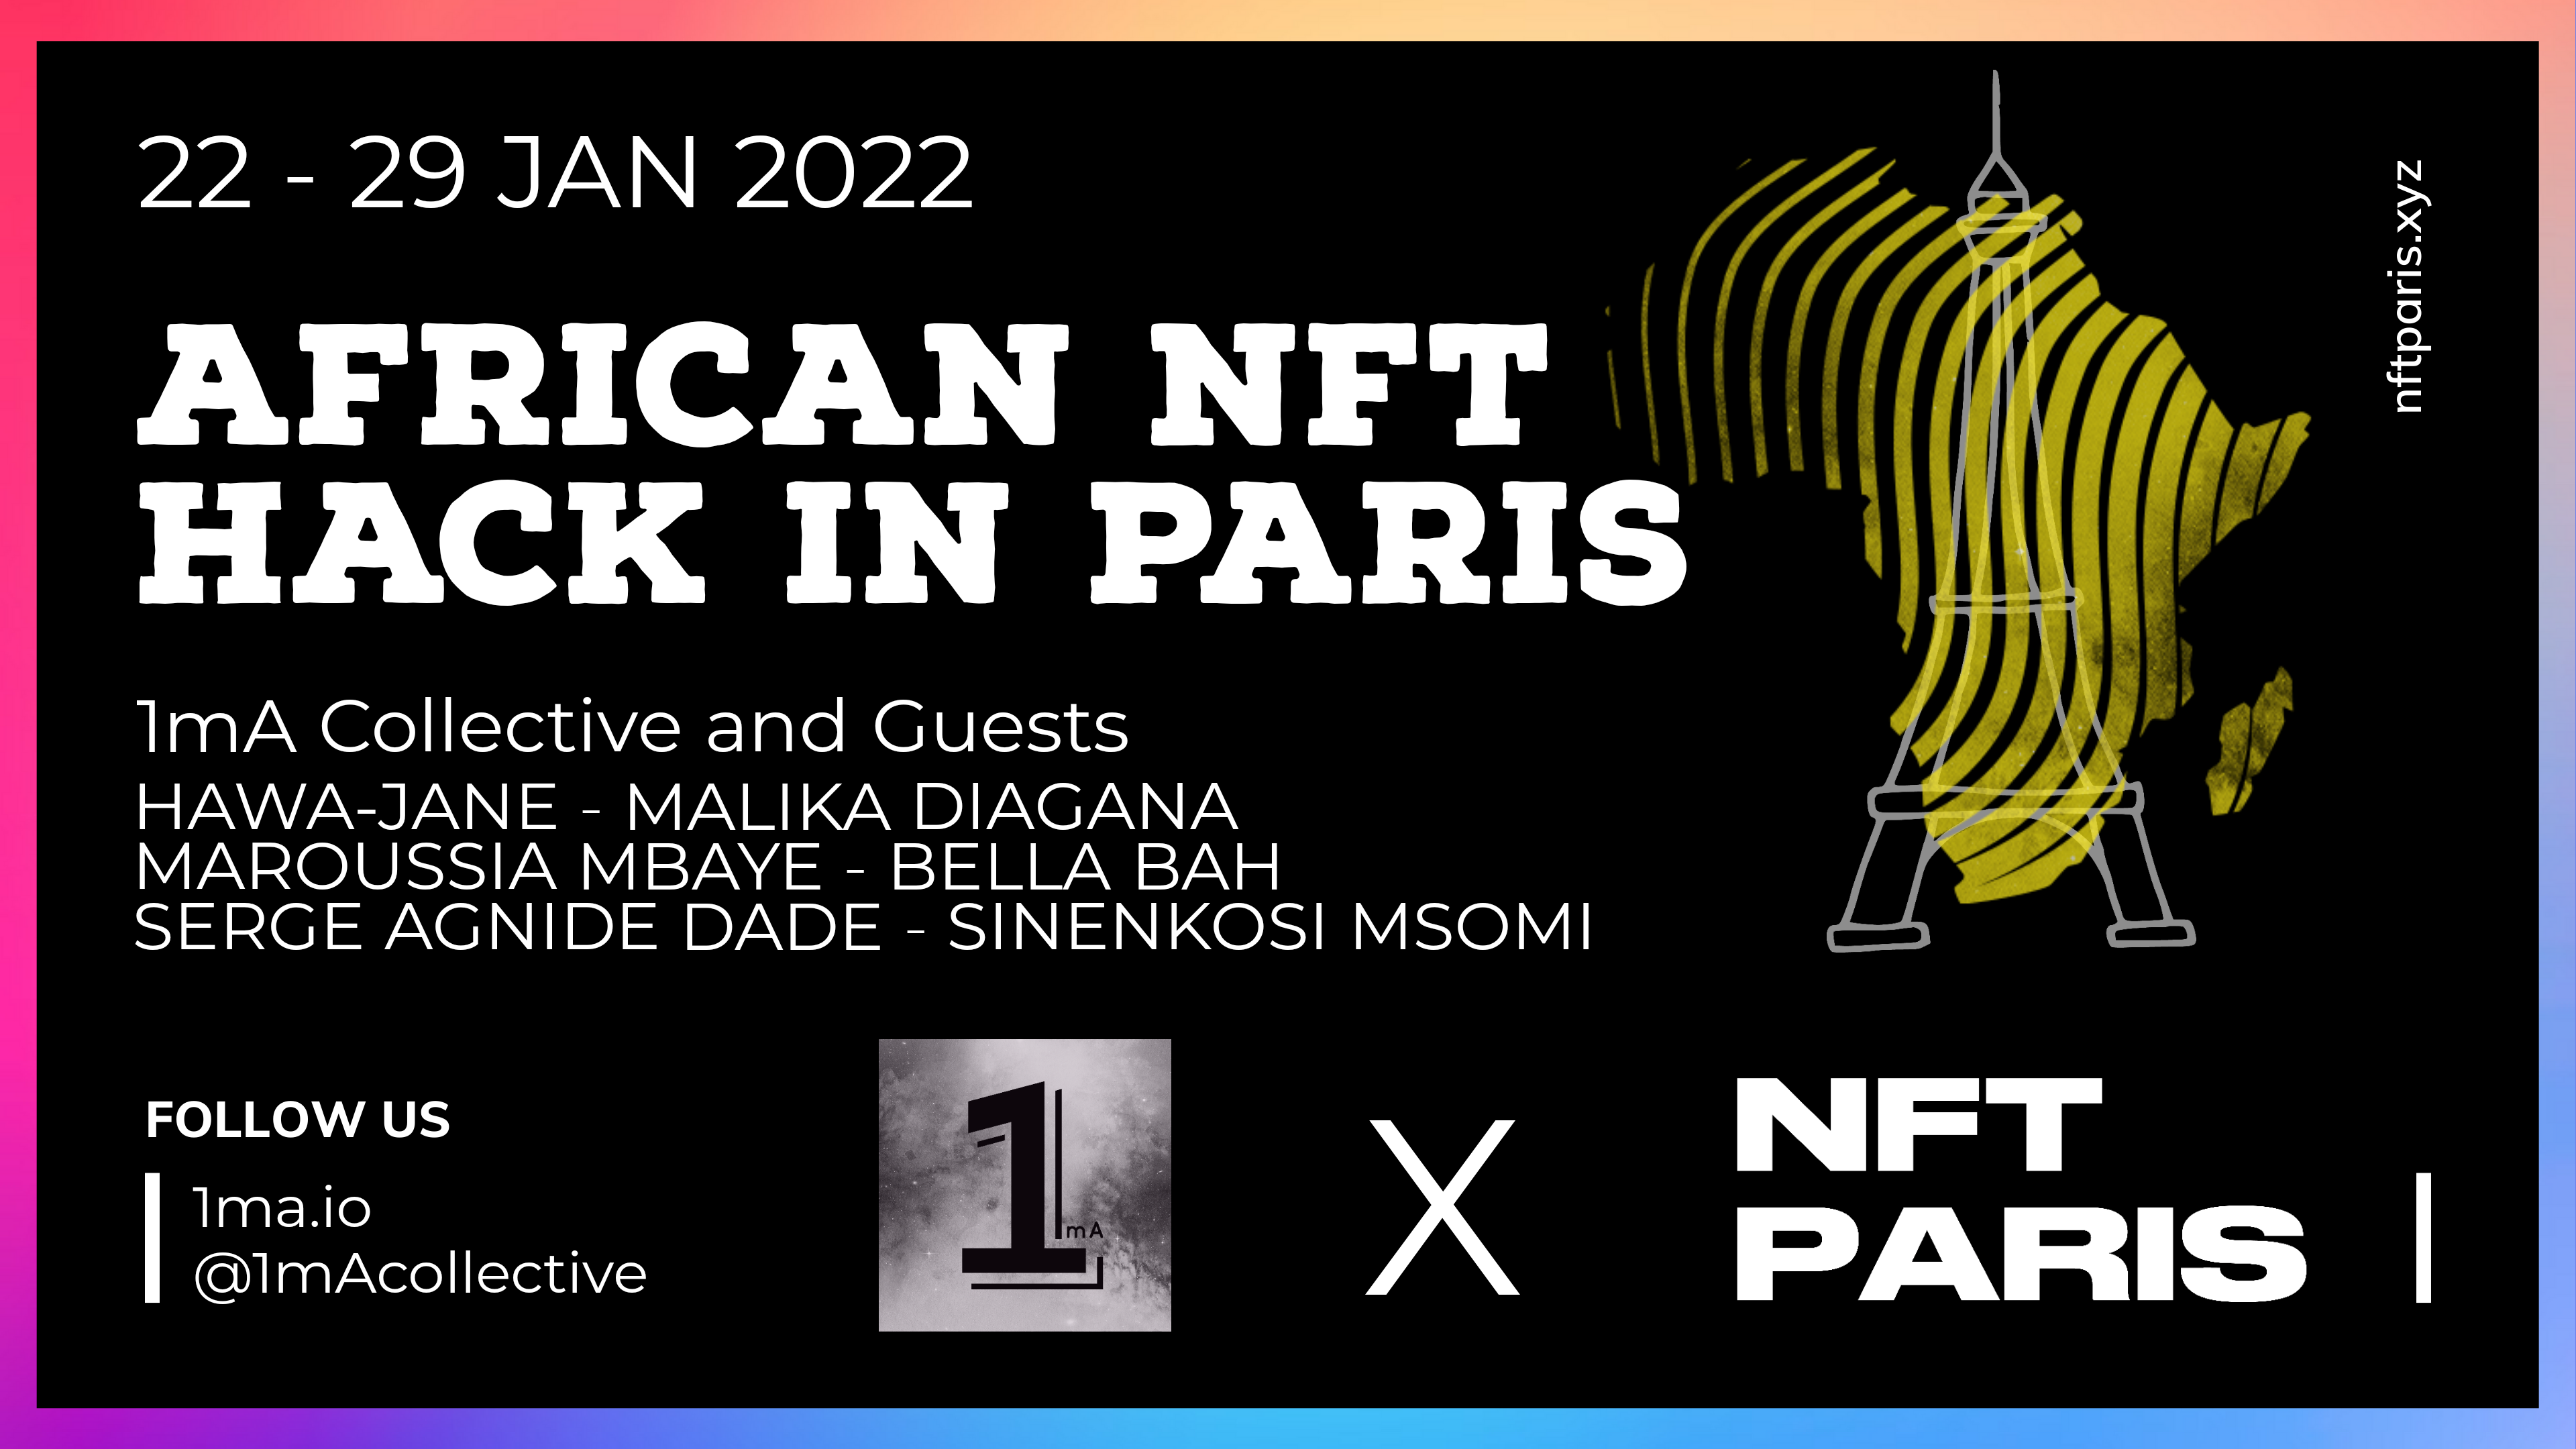 NFT Paris 2022